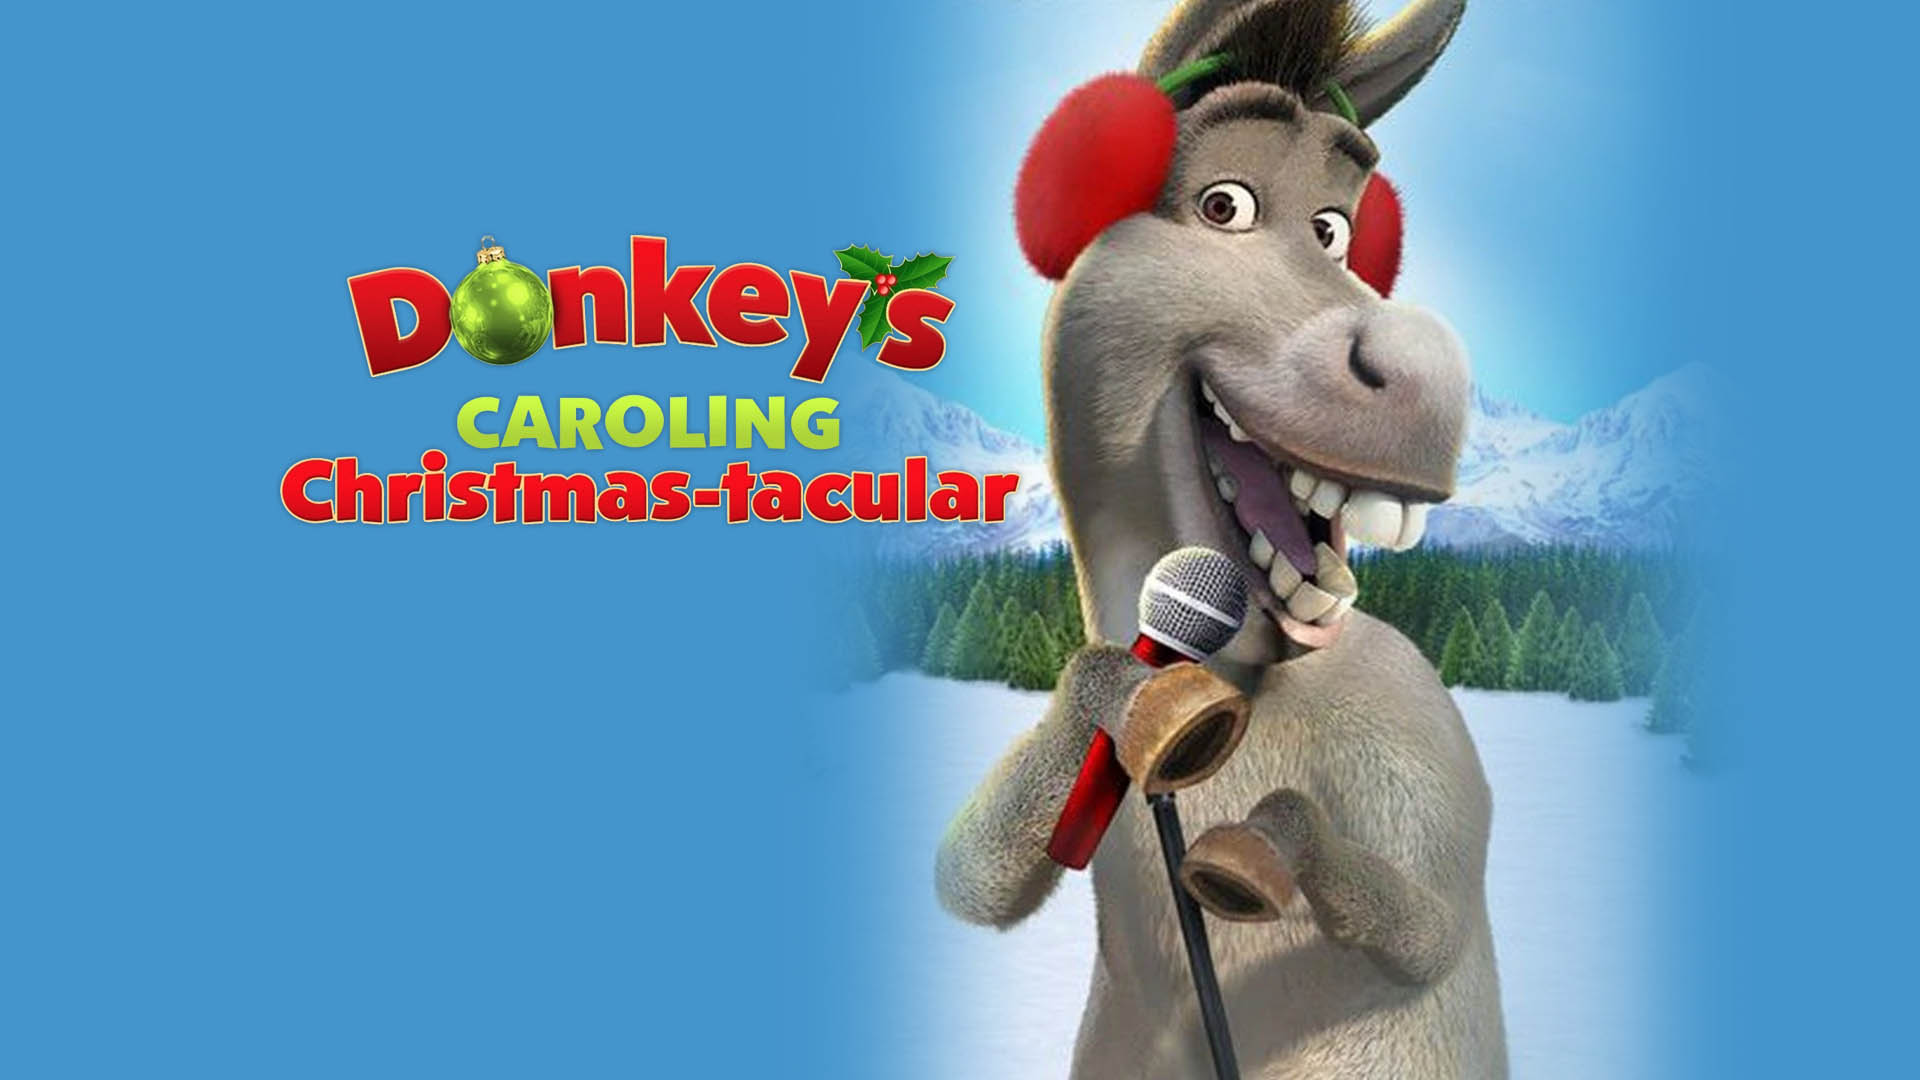 Donkey's Caroling Christmas-Tacular